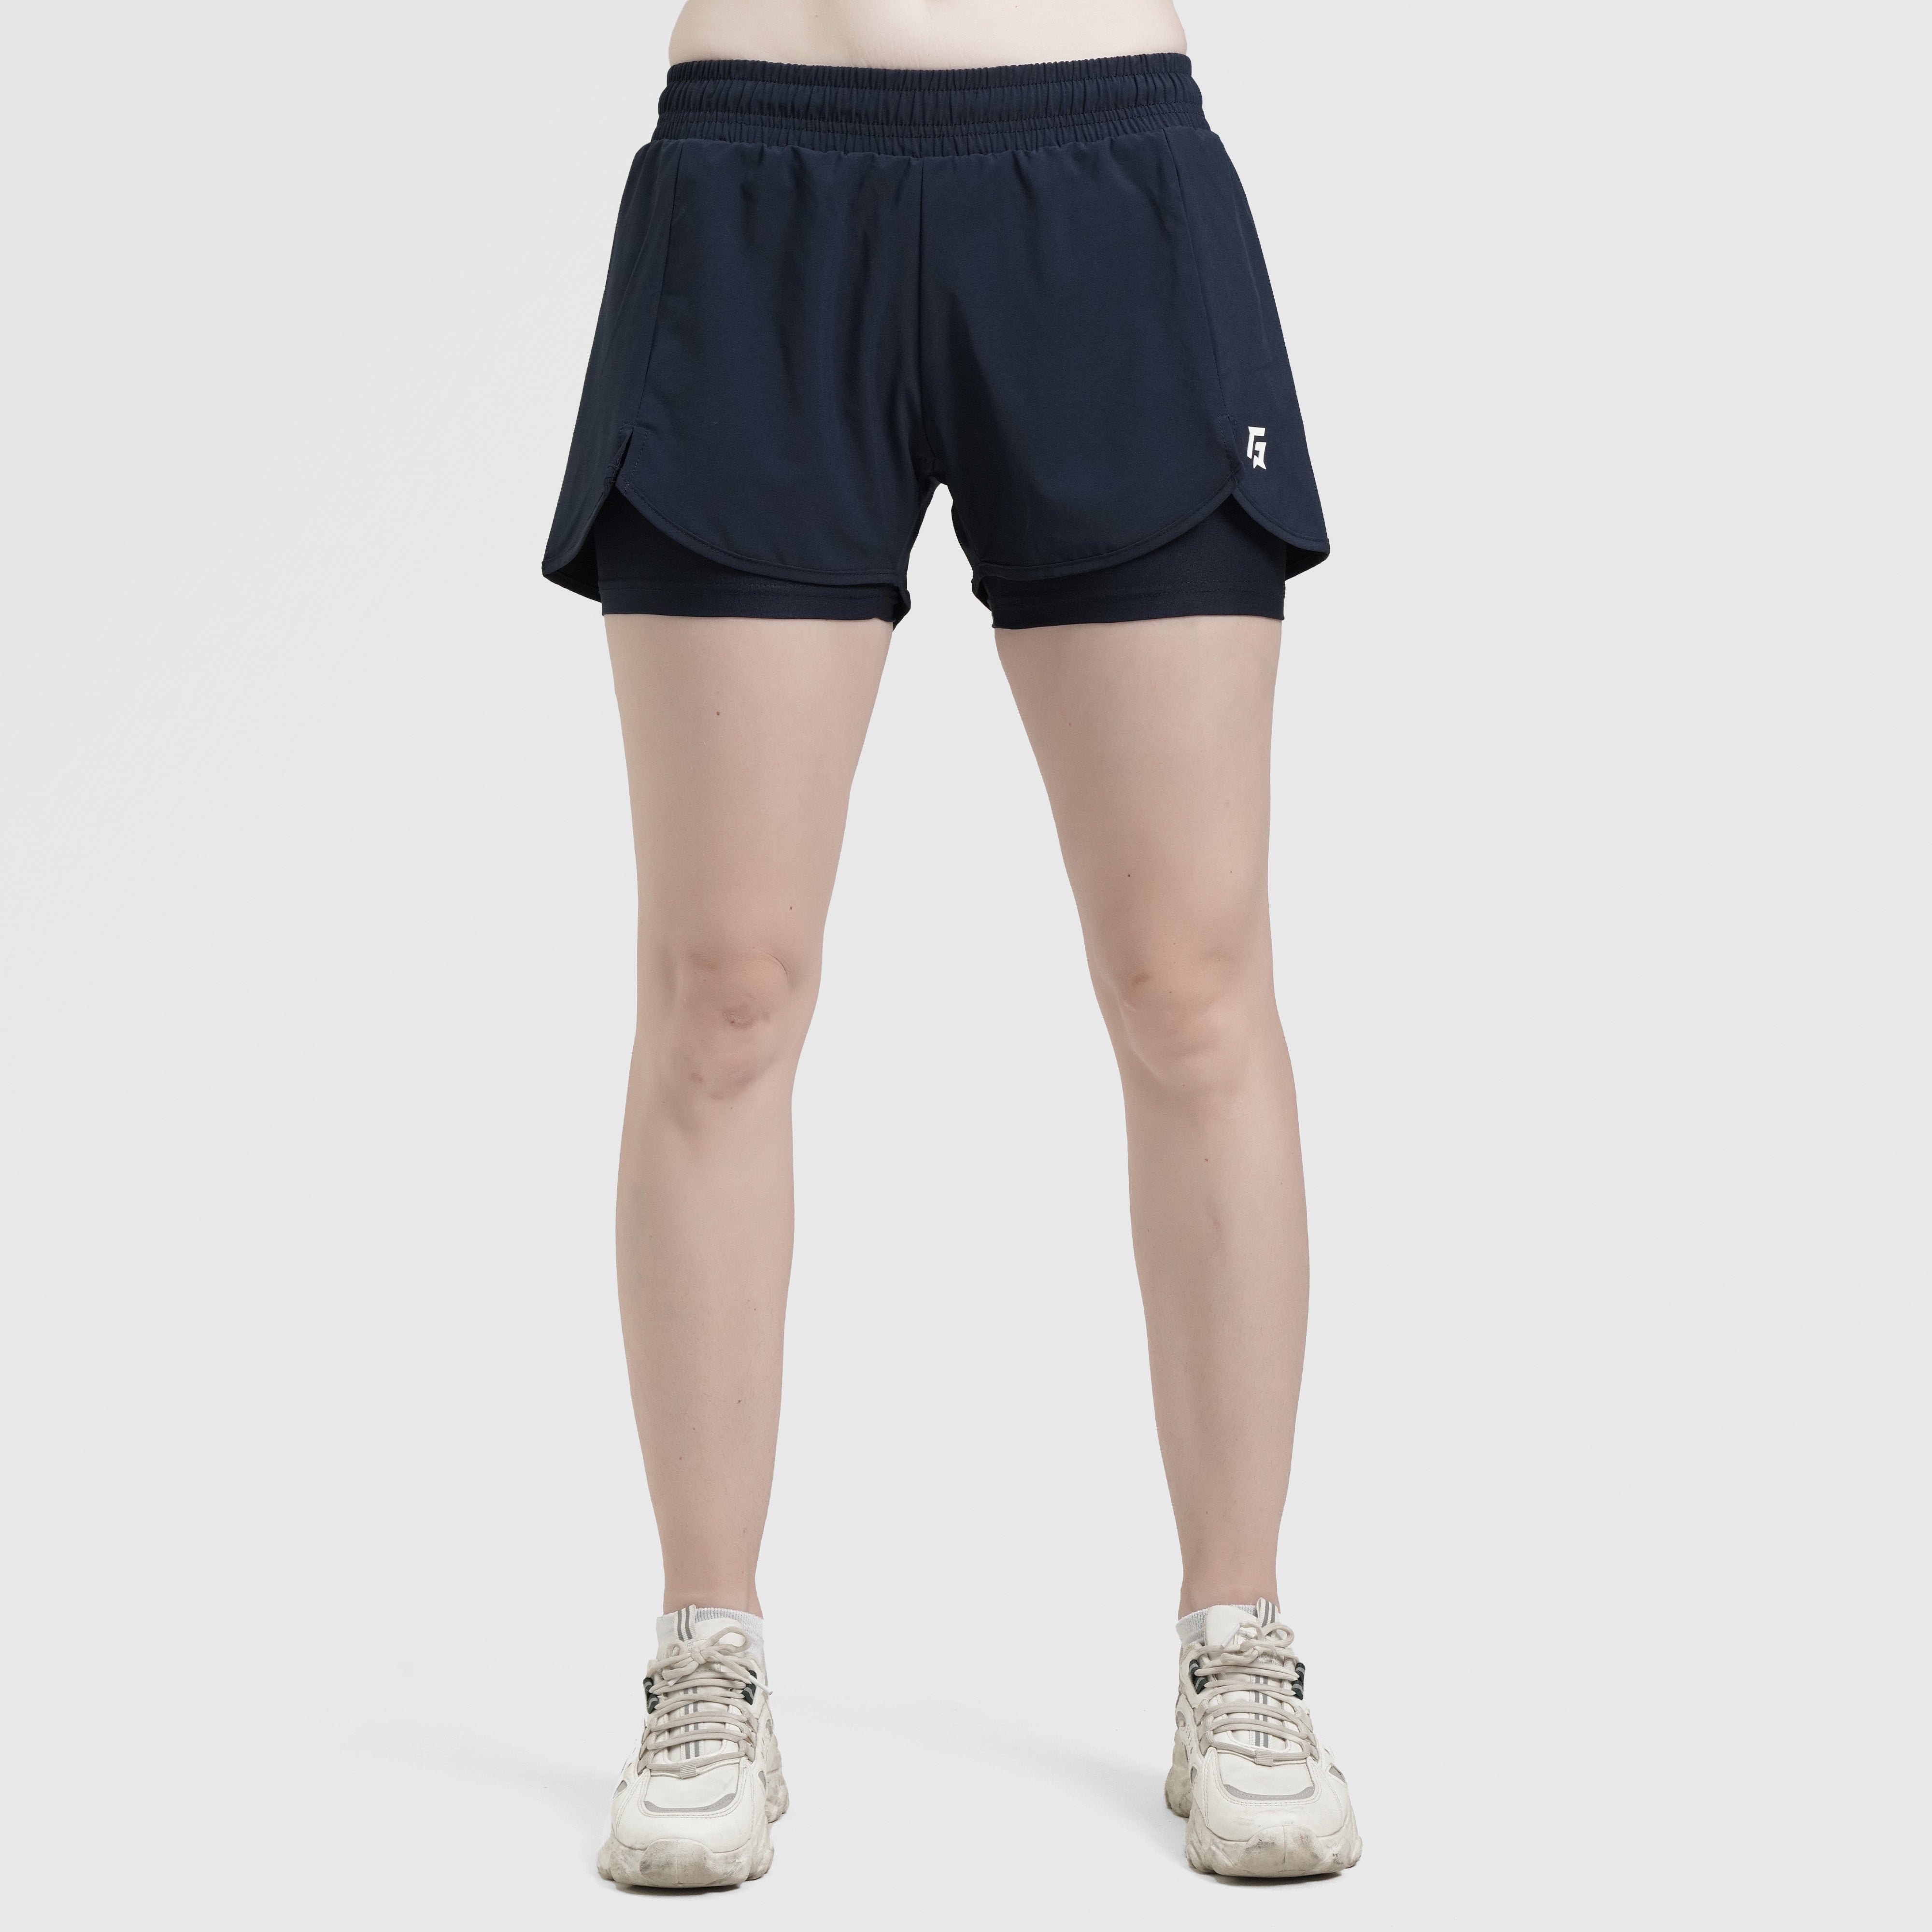 Erge Shorts (Blue)